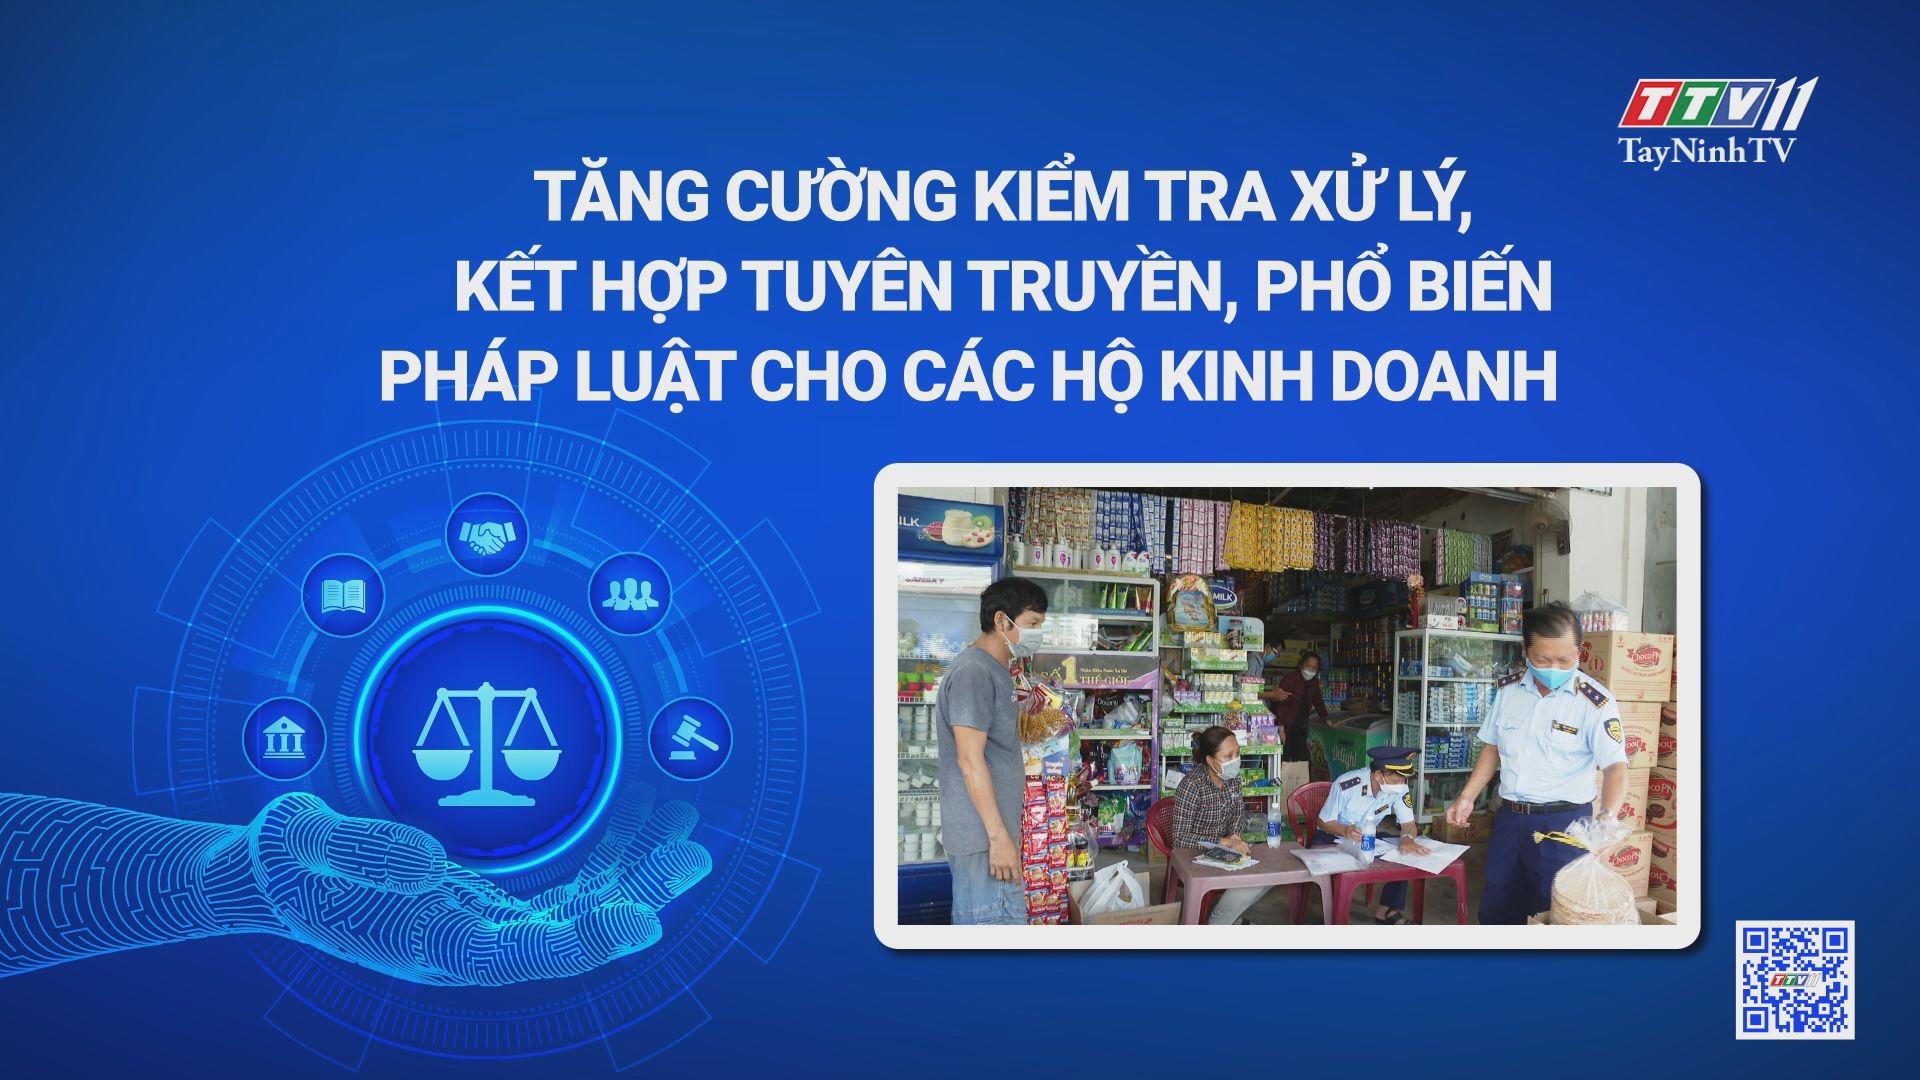 Tăng cường kiểm tra xử lý kết hợp tuyên truyền, phổ biến pháp luật cho các hộ kinh doanh | Phòng chống buôn lậu, gian lận thương mại | TayNinhTV